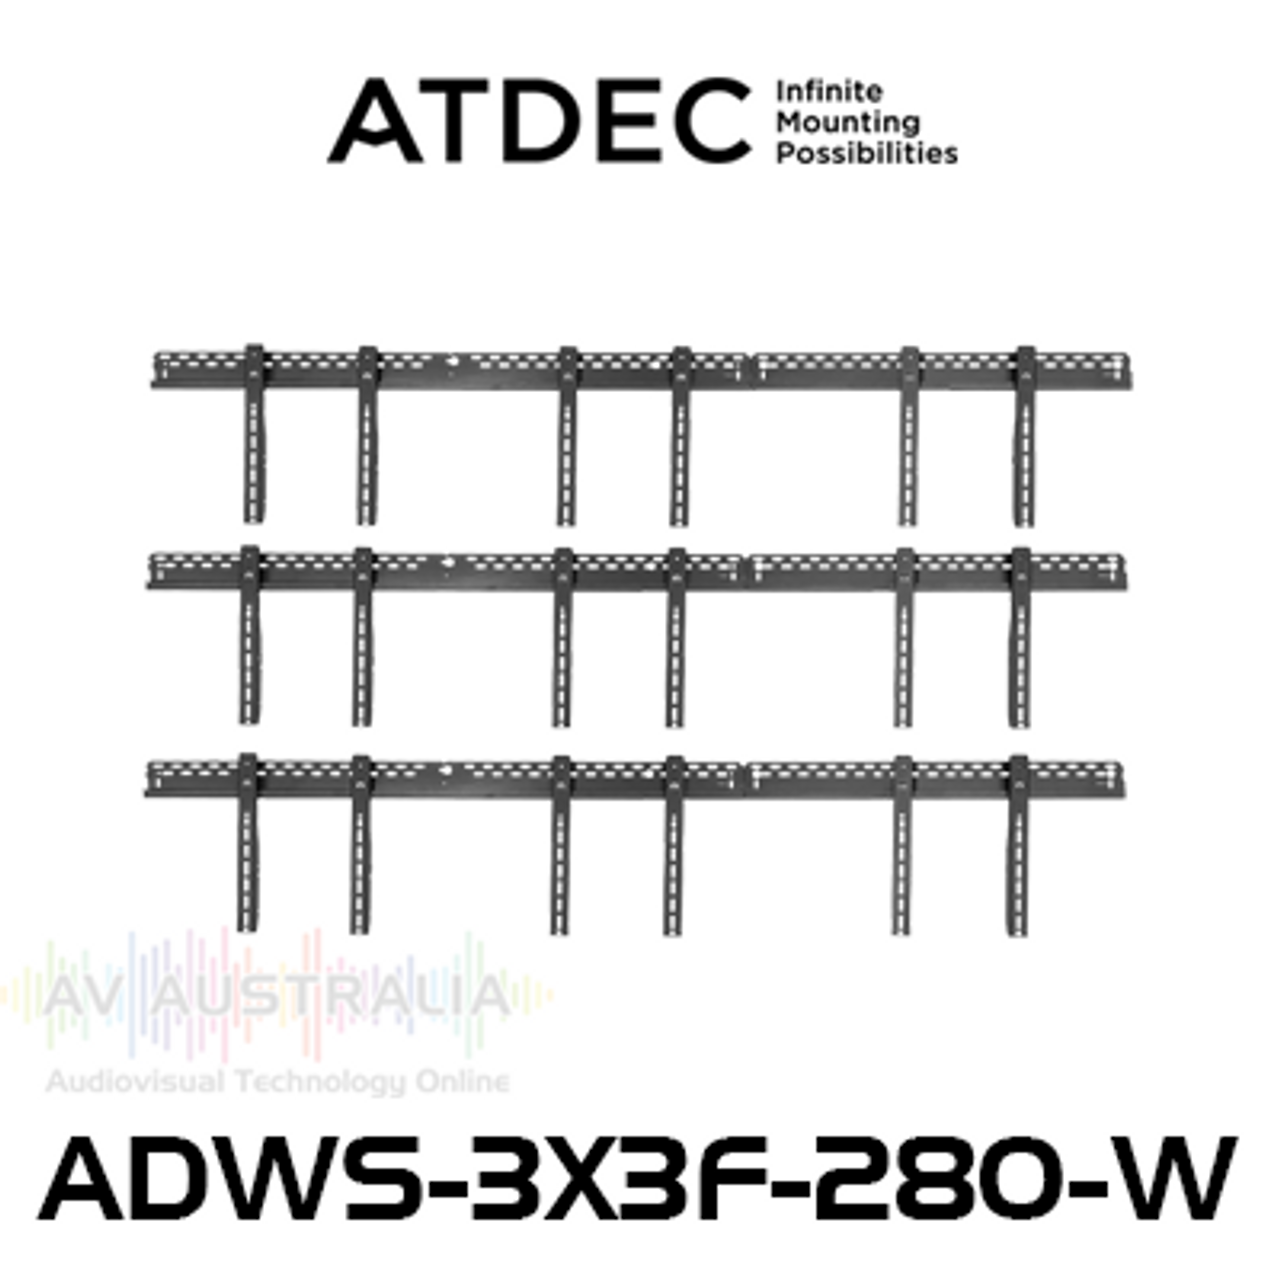 Atdec ADWS-3X3F-280-W 42"-50" Displays 3x3 Video Wall Mount